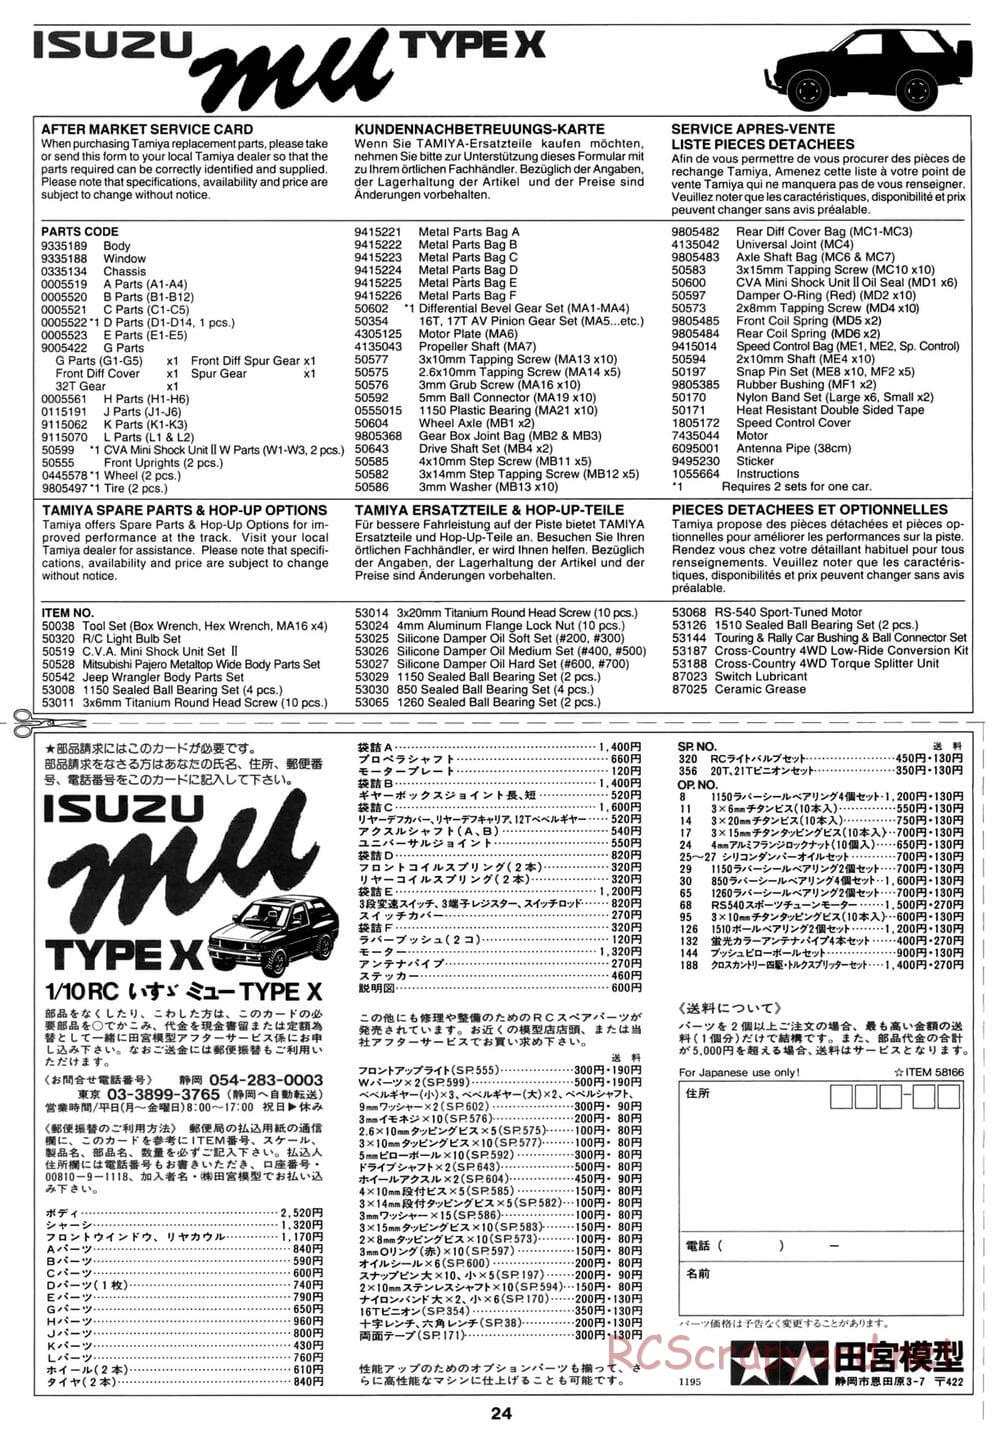 Tamiya - Isuzu Mu Type X - CC-01 Chassis - Manual - Page 24